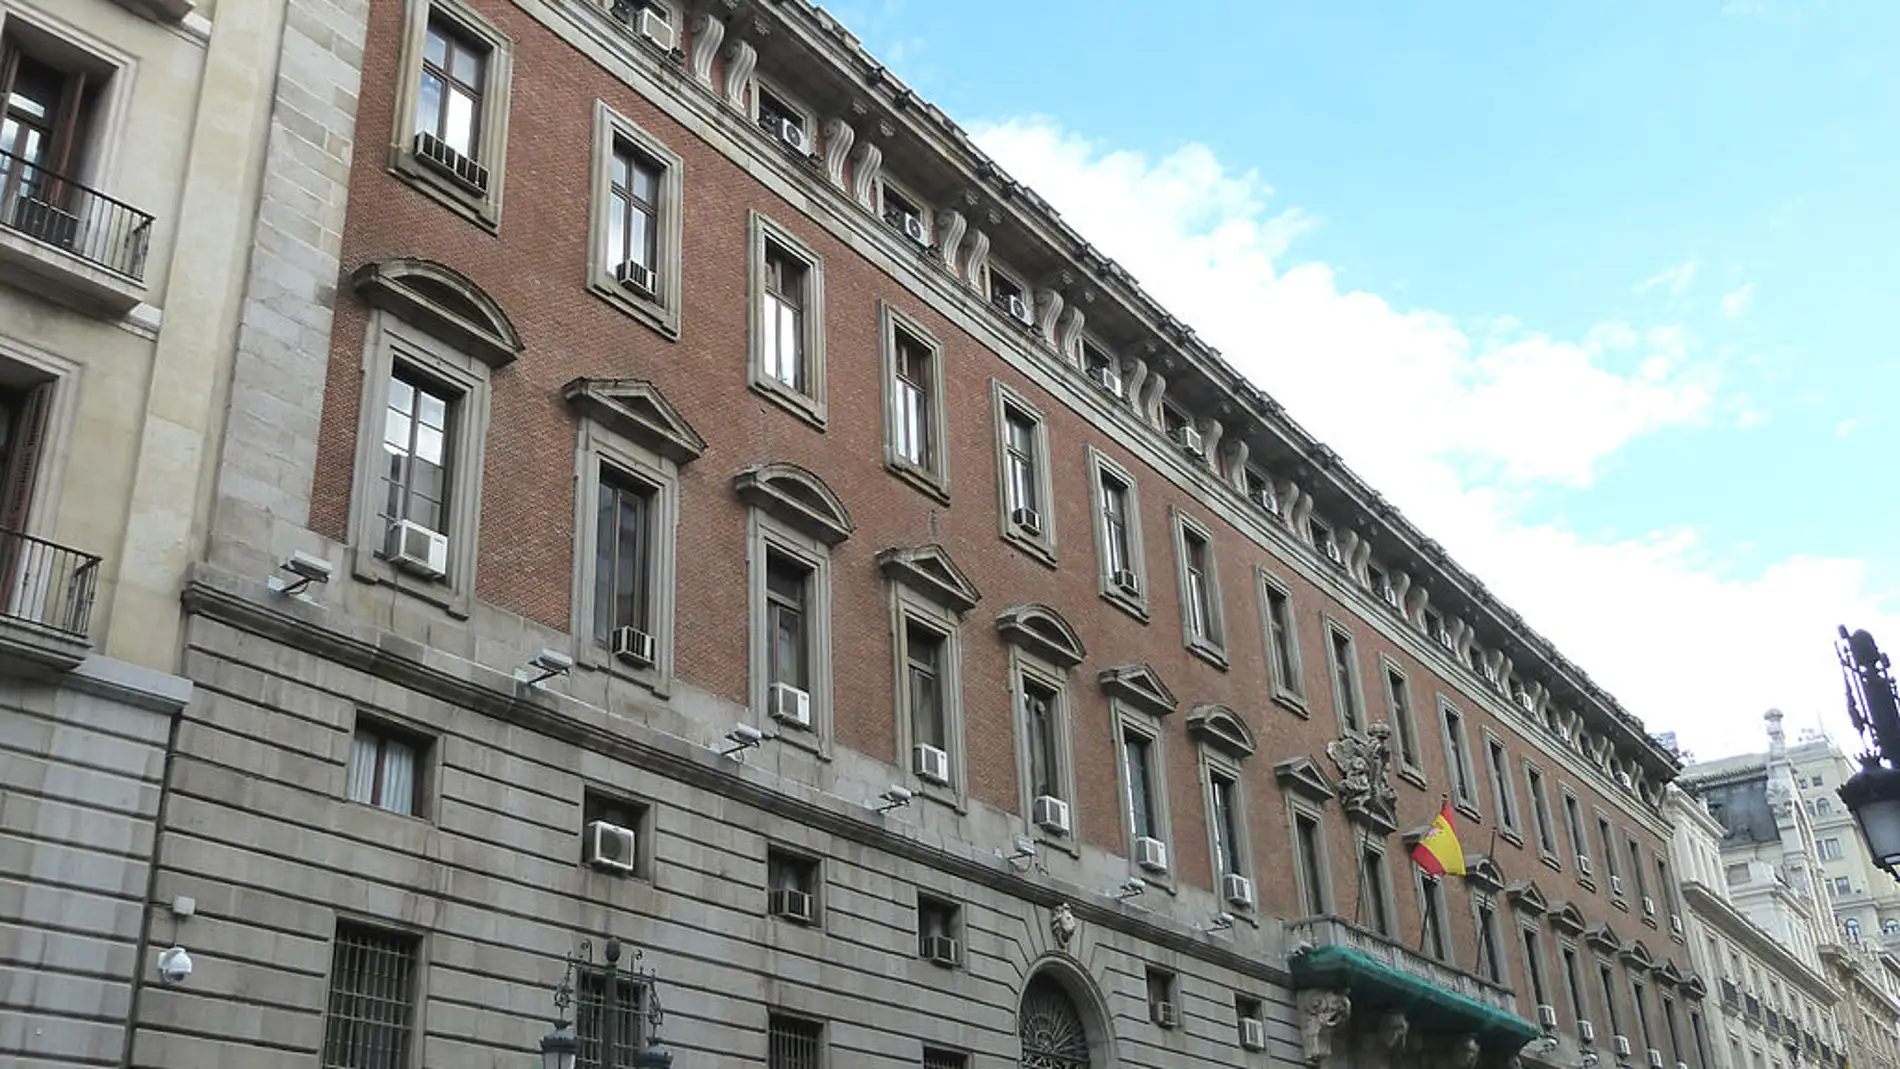 Real Casa de la Aduana de Madrid: ¿Qué Rey ordenó su construcción y dónde podemos encontrarla?